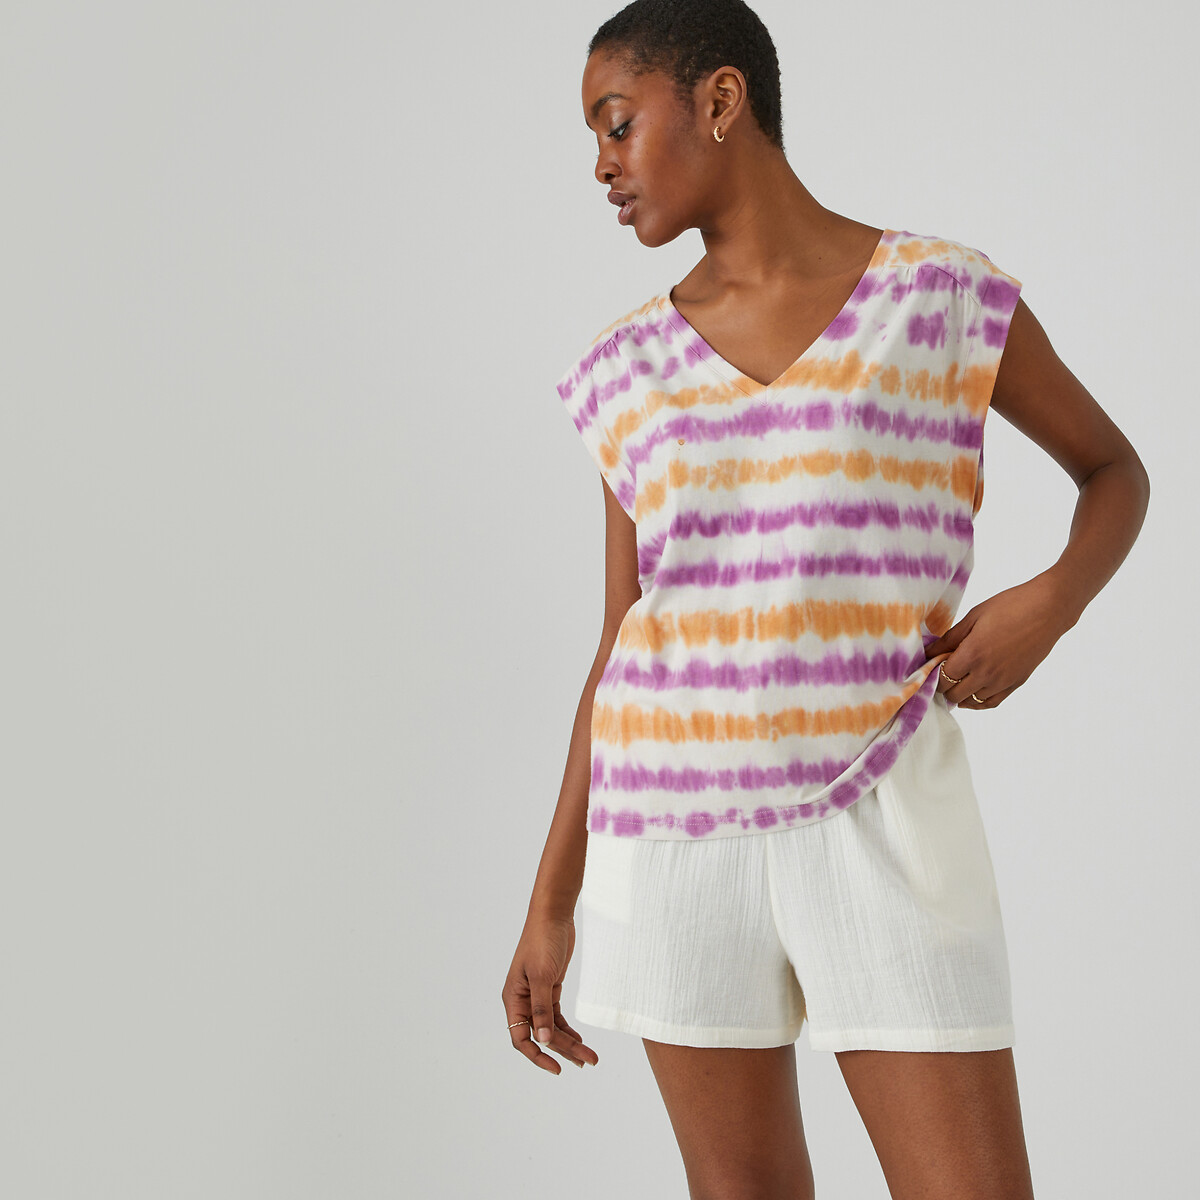 Μόδα > Γυναικεία > Ρούχα > T-shirt, αμάνικες μπλούζες > Αμάνικες μπλούζες Αμάνικη μπλούζα με μοτίβο tie & dye